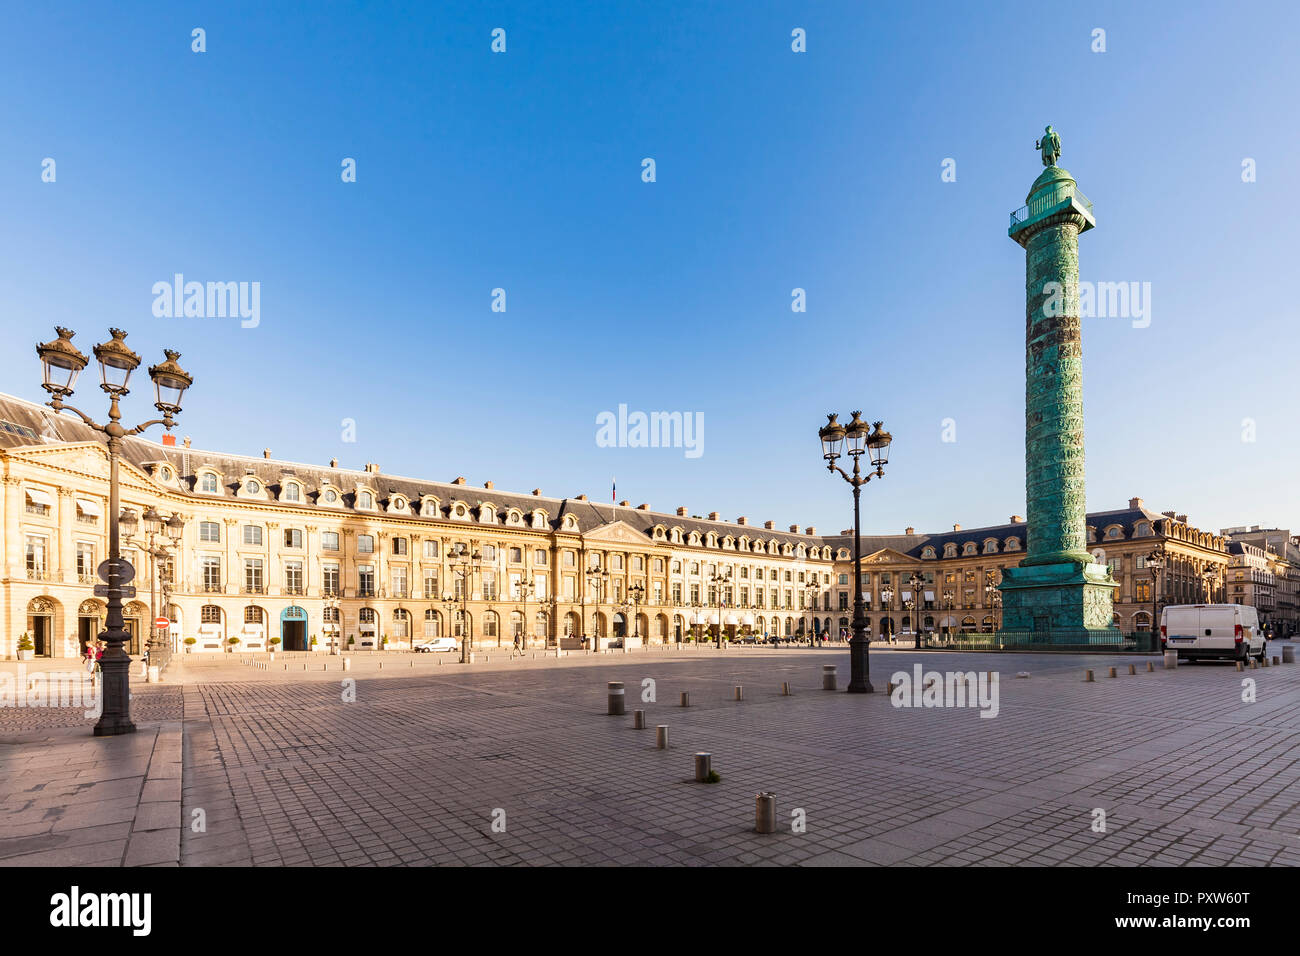 France, Paris, Place Vendome, Victory Column, Colonne Vendome Stock Photo